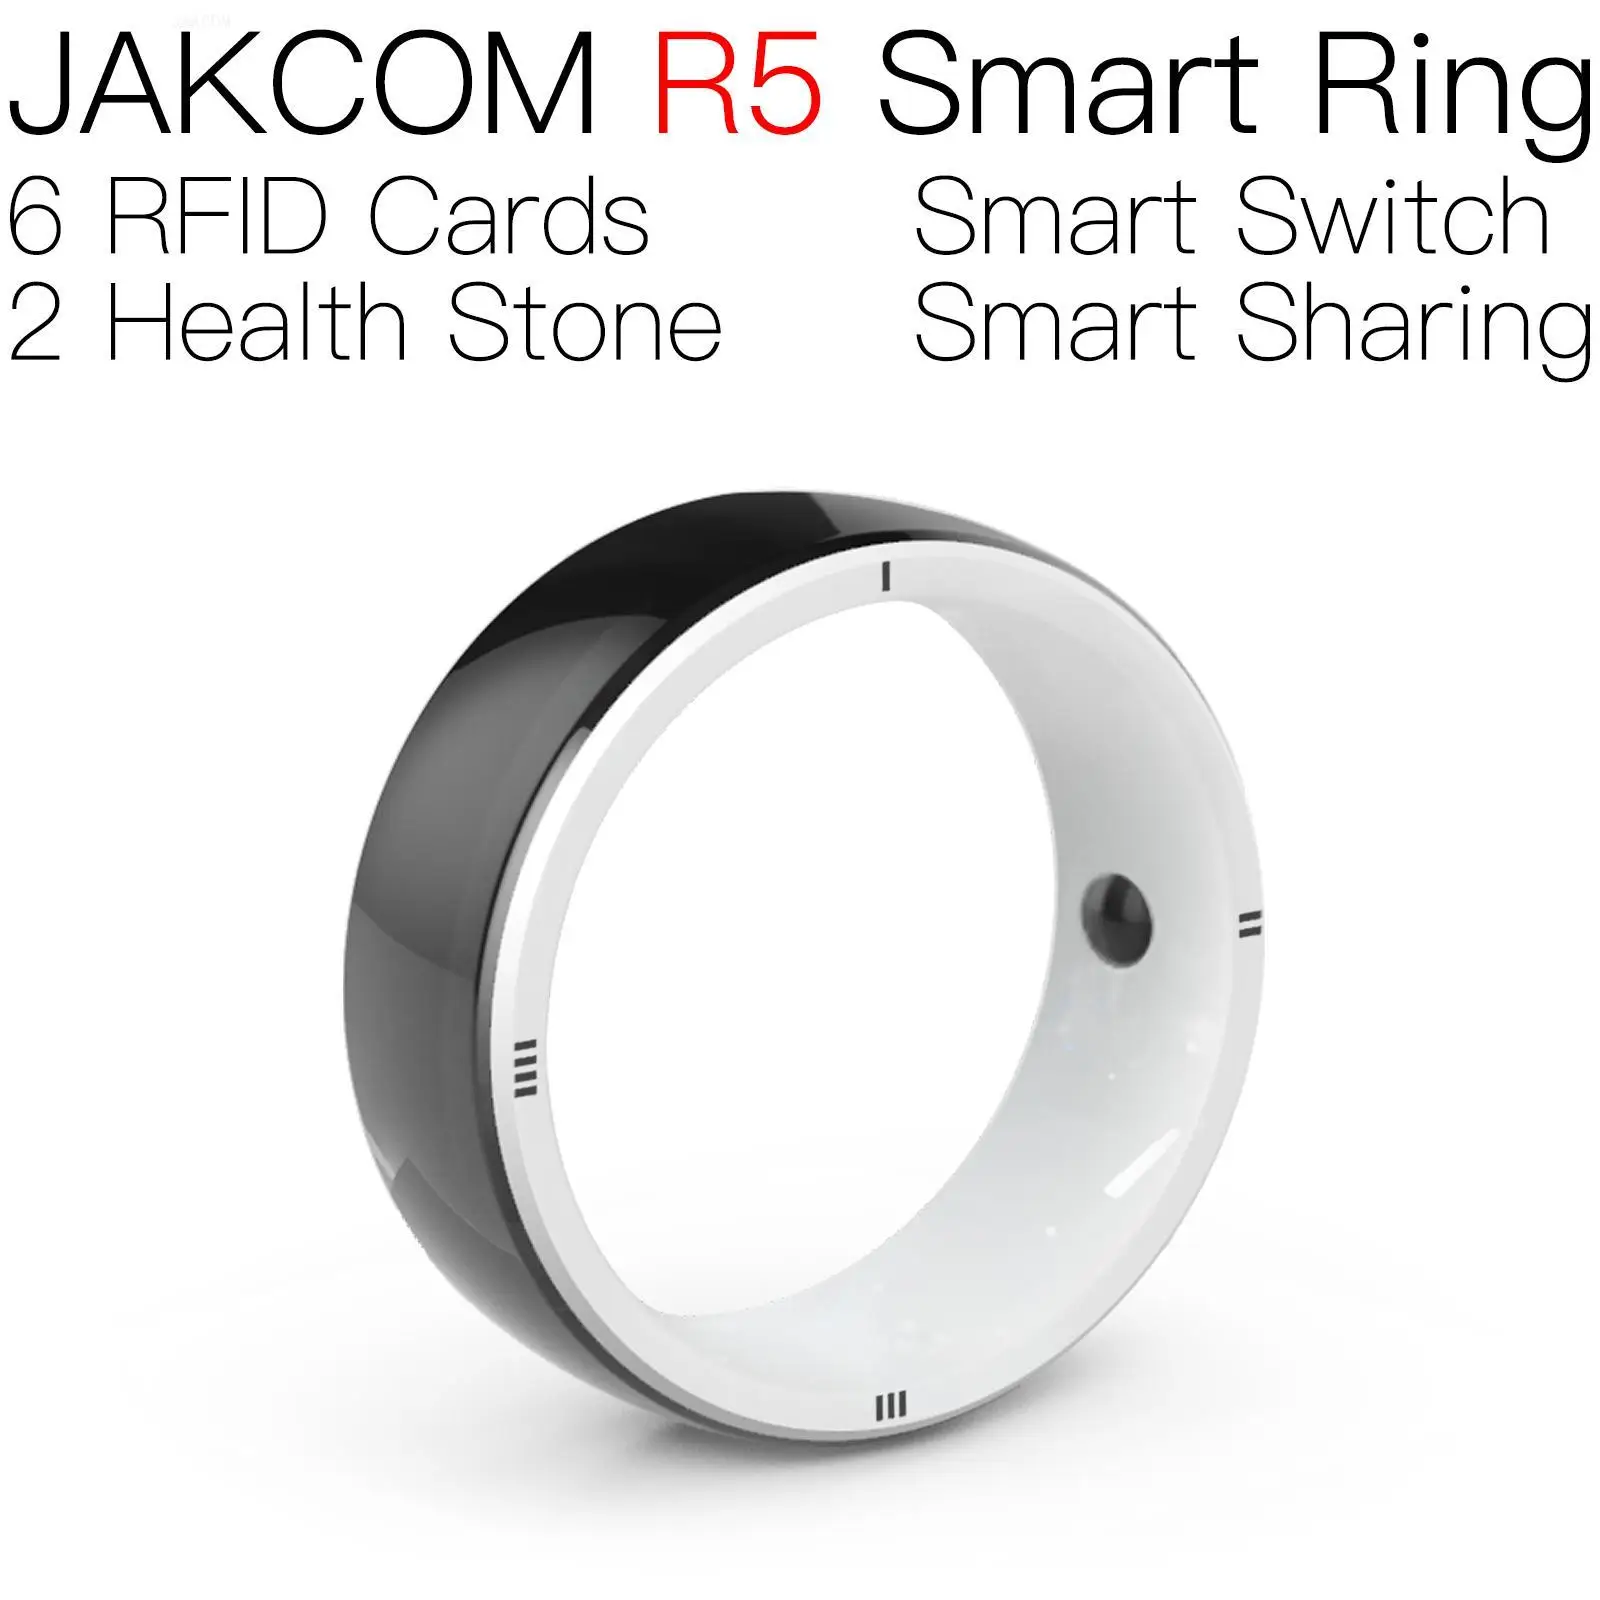 

Умное кольцо JAKCOM R5 позже, чем t5577 20 шт., ПВХ Карта rfid 50 шт., перезапись ntag 125 МГц, размер кольца, наклейки, внутренние метки